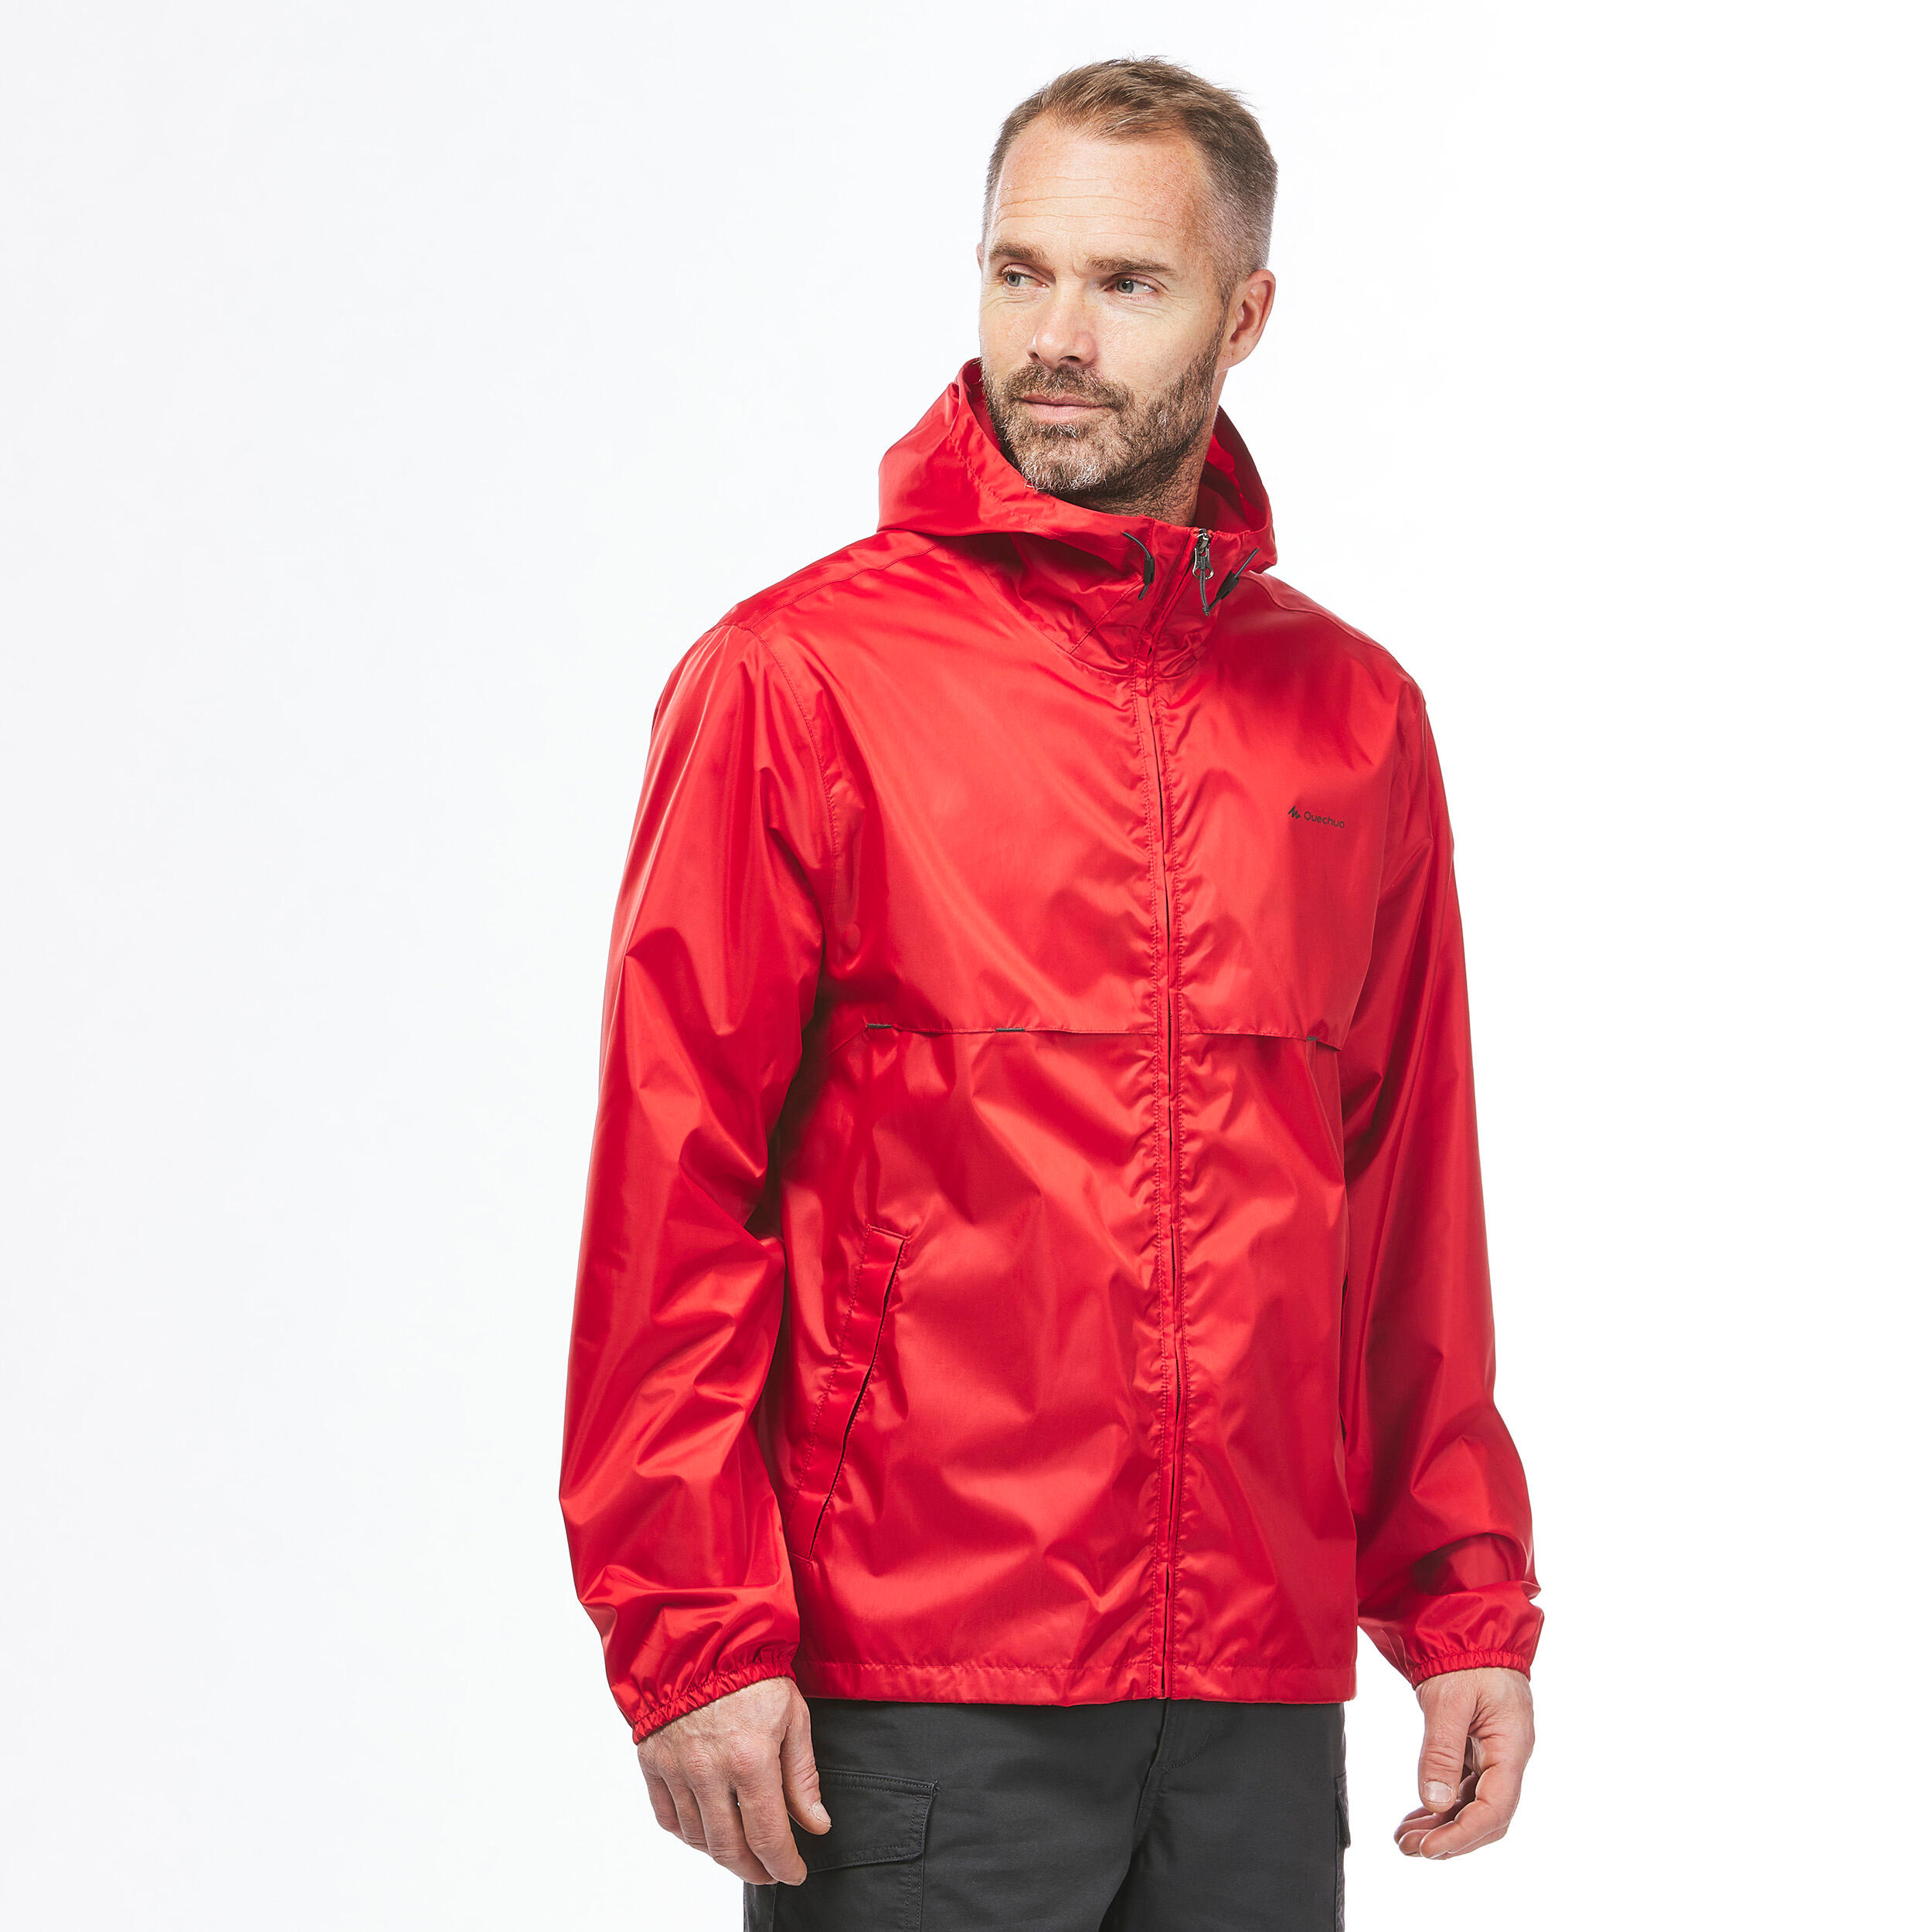 Men's Windproof and Water-repellent Hiking Jacket - Raincut Full Zip 5/9